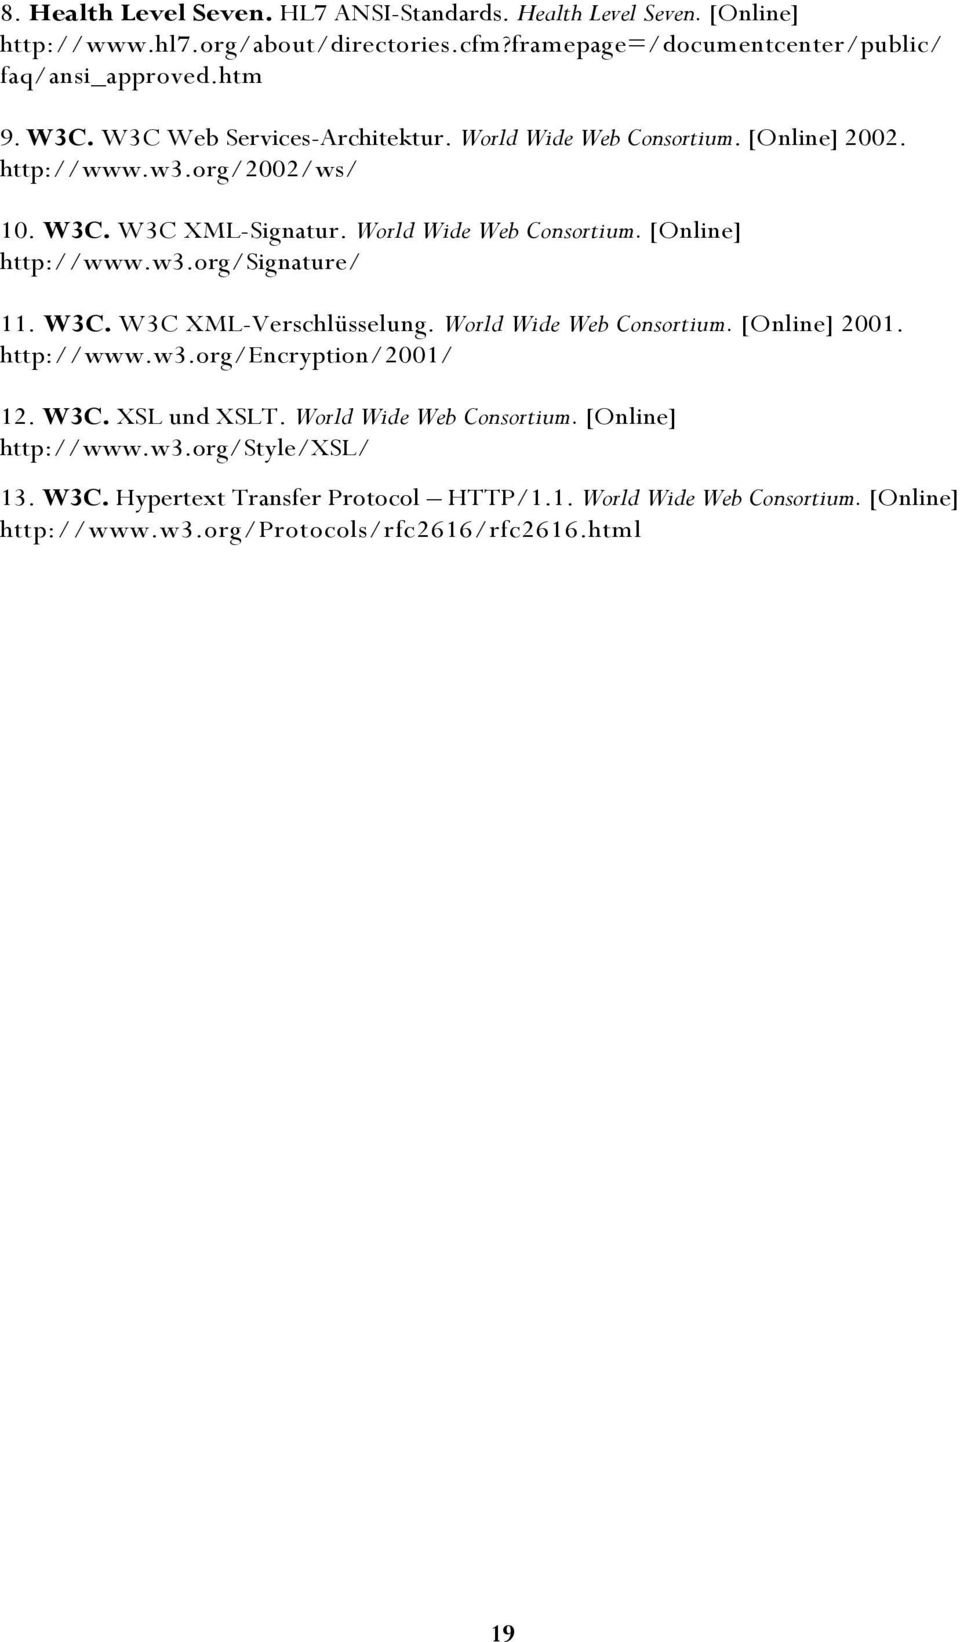 W3C. W3C XML-Verschlüsselung. World Wide Web Consortium. [Online] 2001. http://www.w3.org/encryption/2001/ 12. W3C. XSL und XSLT. World Wide Web Consortium. [Online] http://www.